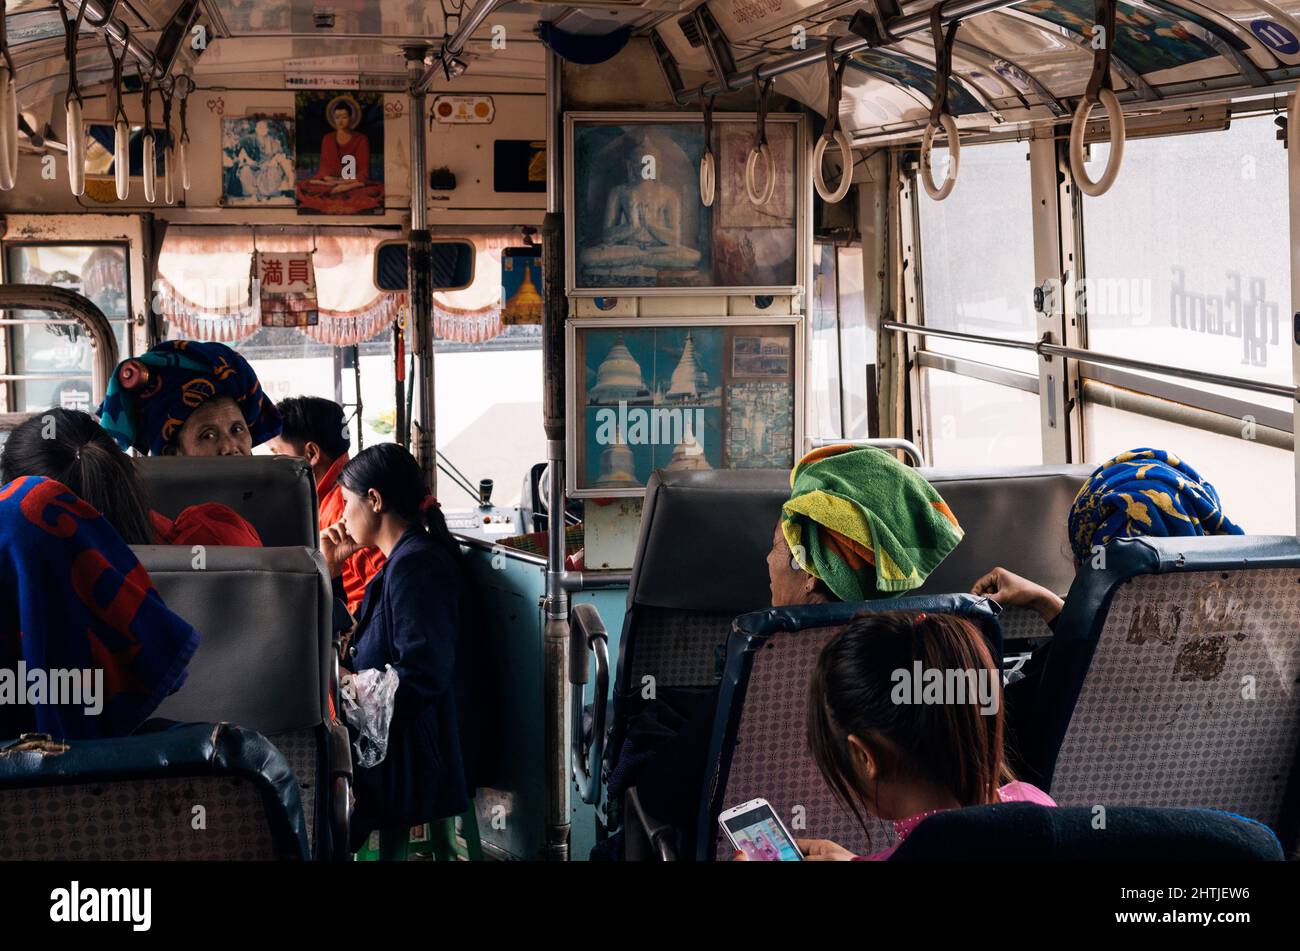 Kakku, Myanmar - 04.16.2017: Ethnic passengers with traditional towel turban in bus Stock Photo